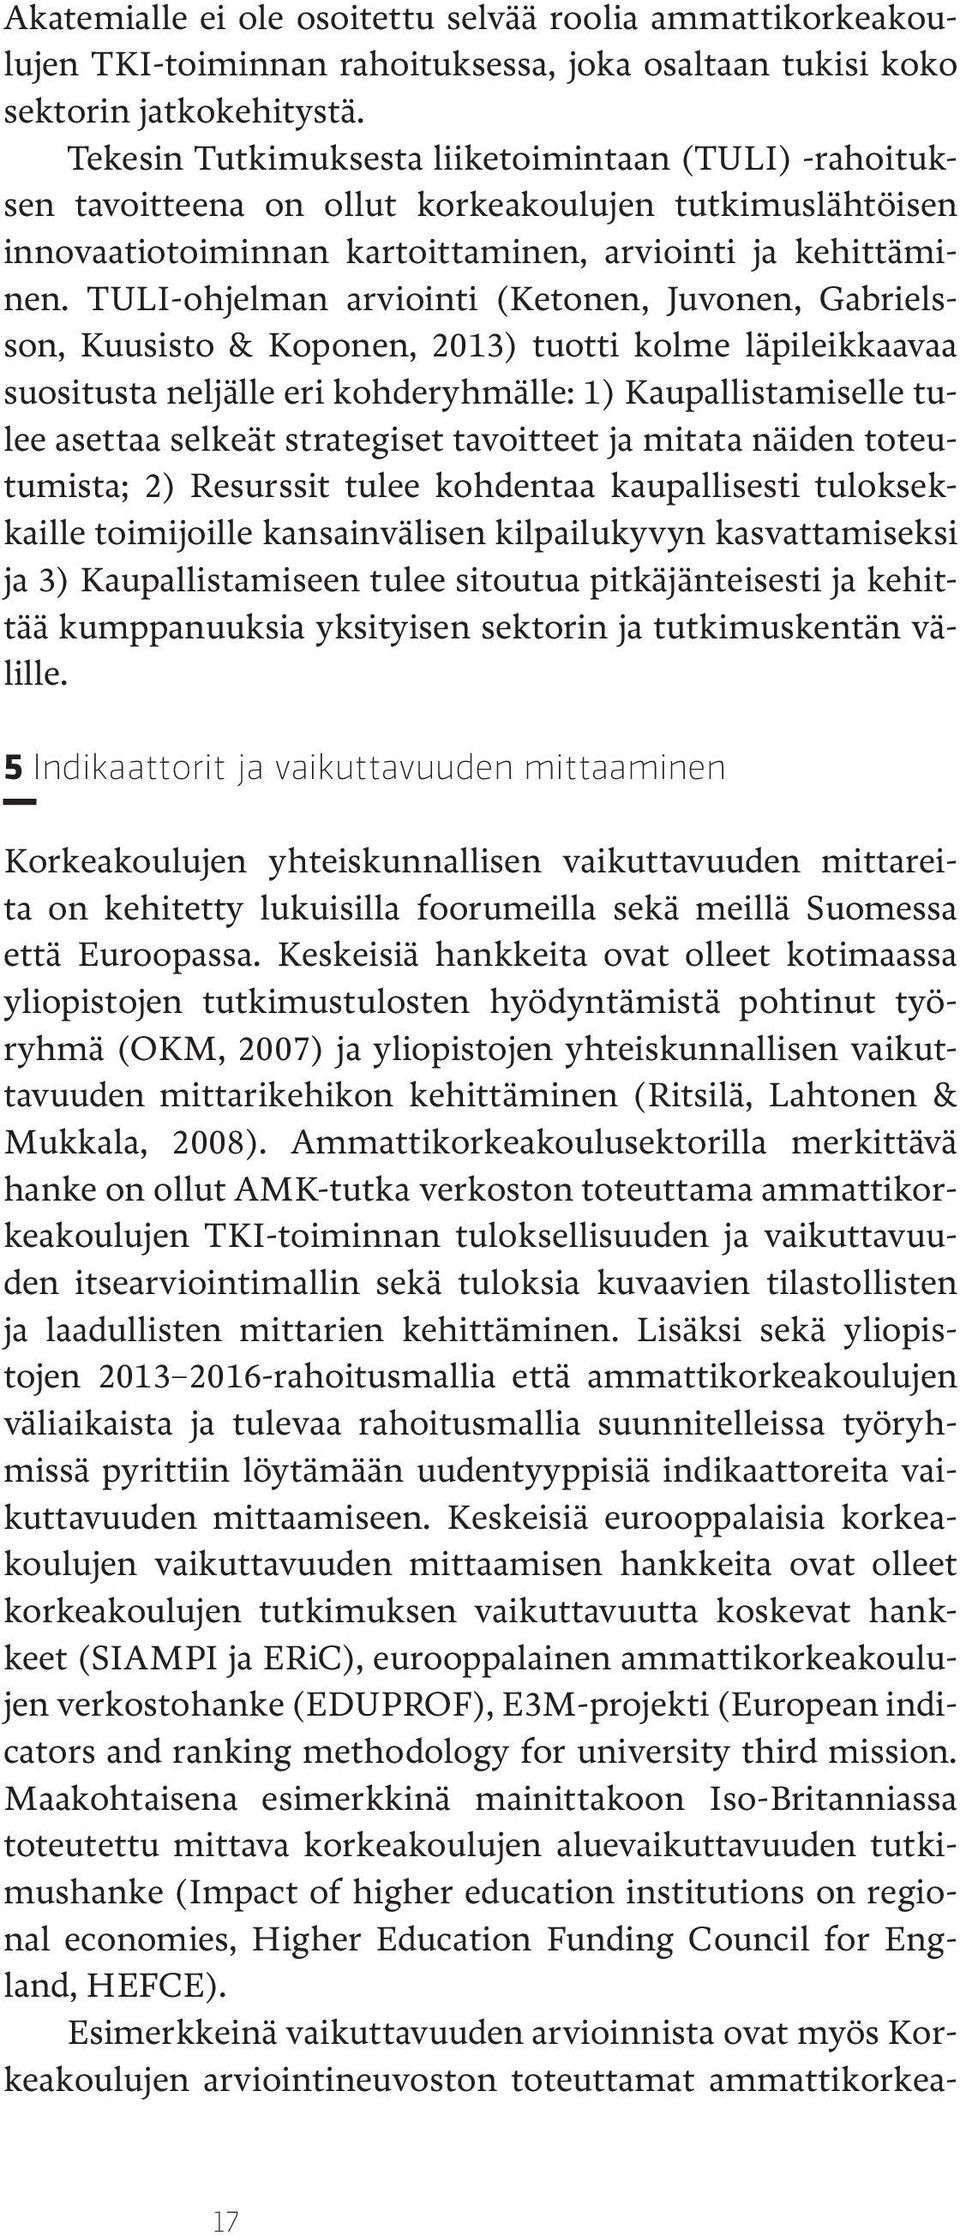 TULI-ohjelman arviointi (Ketonen, Juvonen, Gabrielsson, Kuusisto & Koponen, 2013) tuotti kolme läpileikkaavaa suositusta neljälle eri kohderyhmälle: 1) Kaupallistamiselle tulee asettaa selkeät